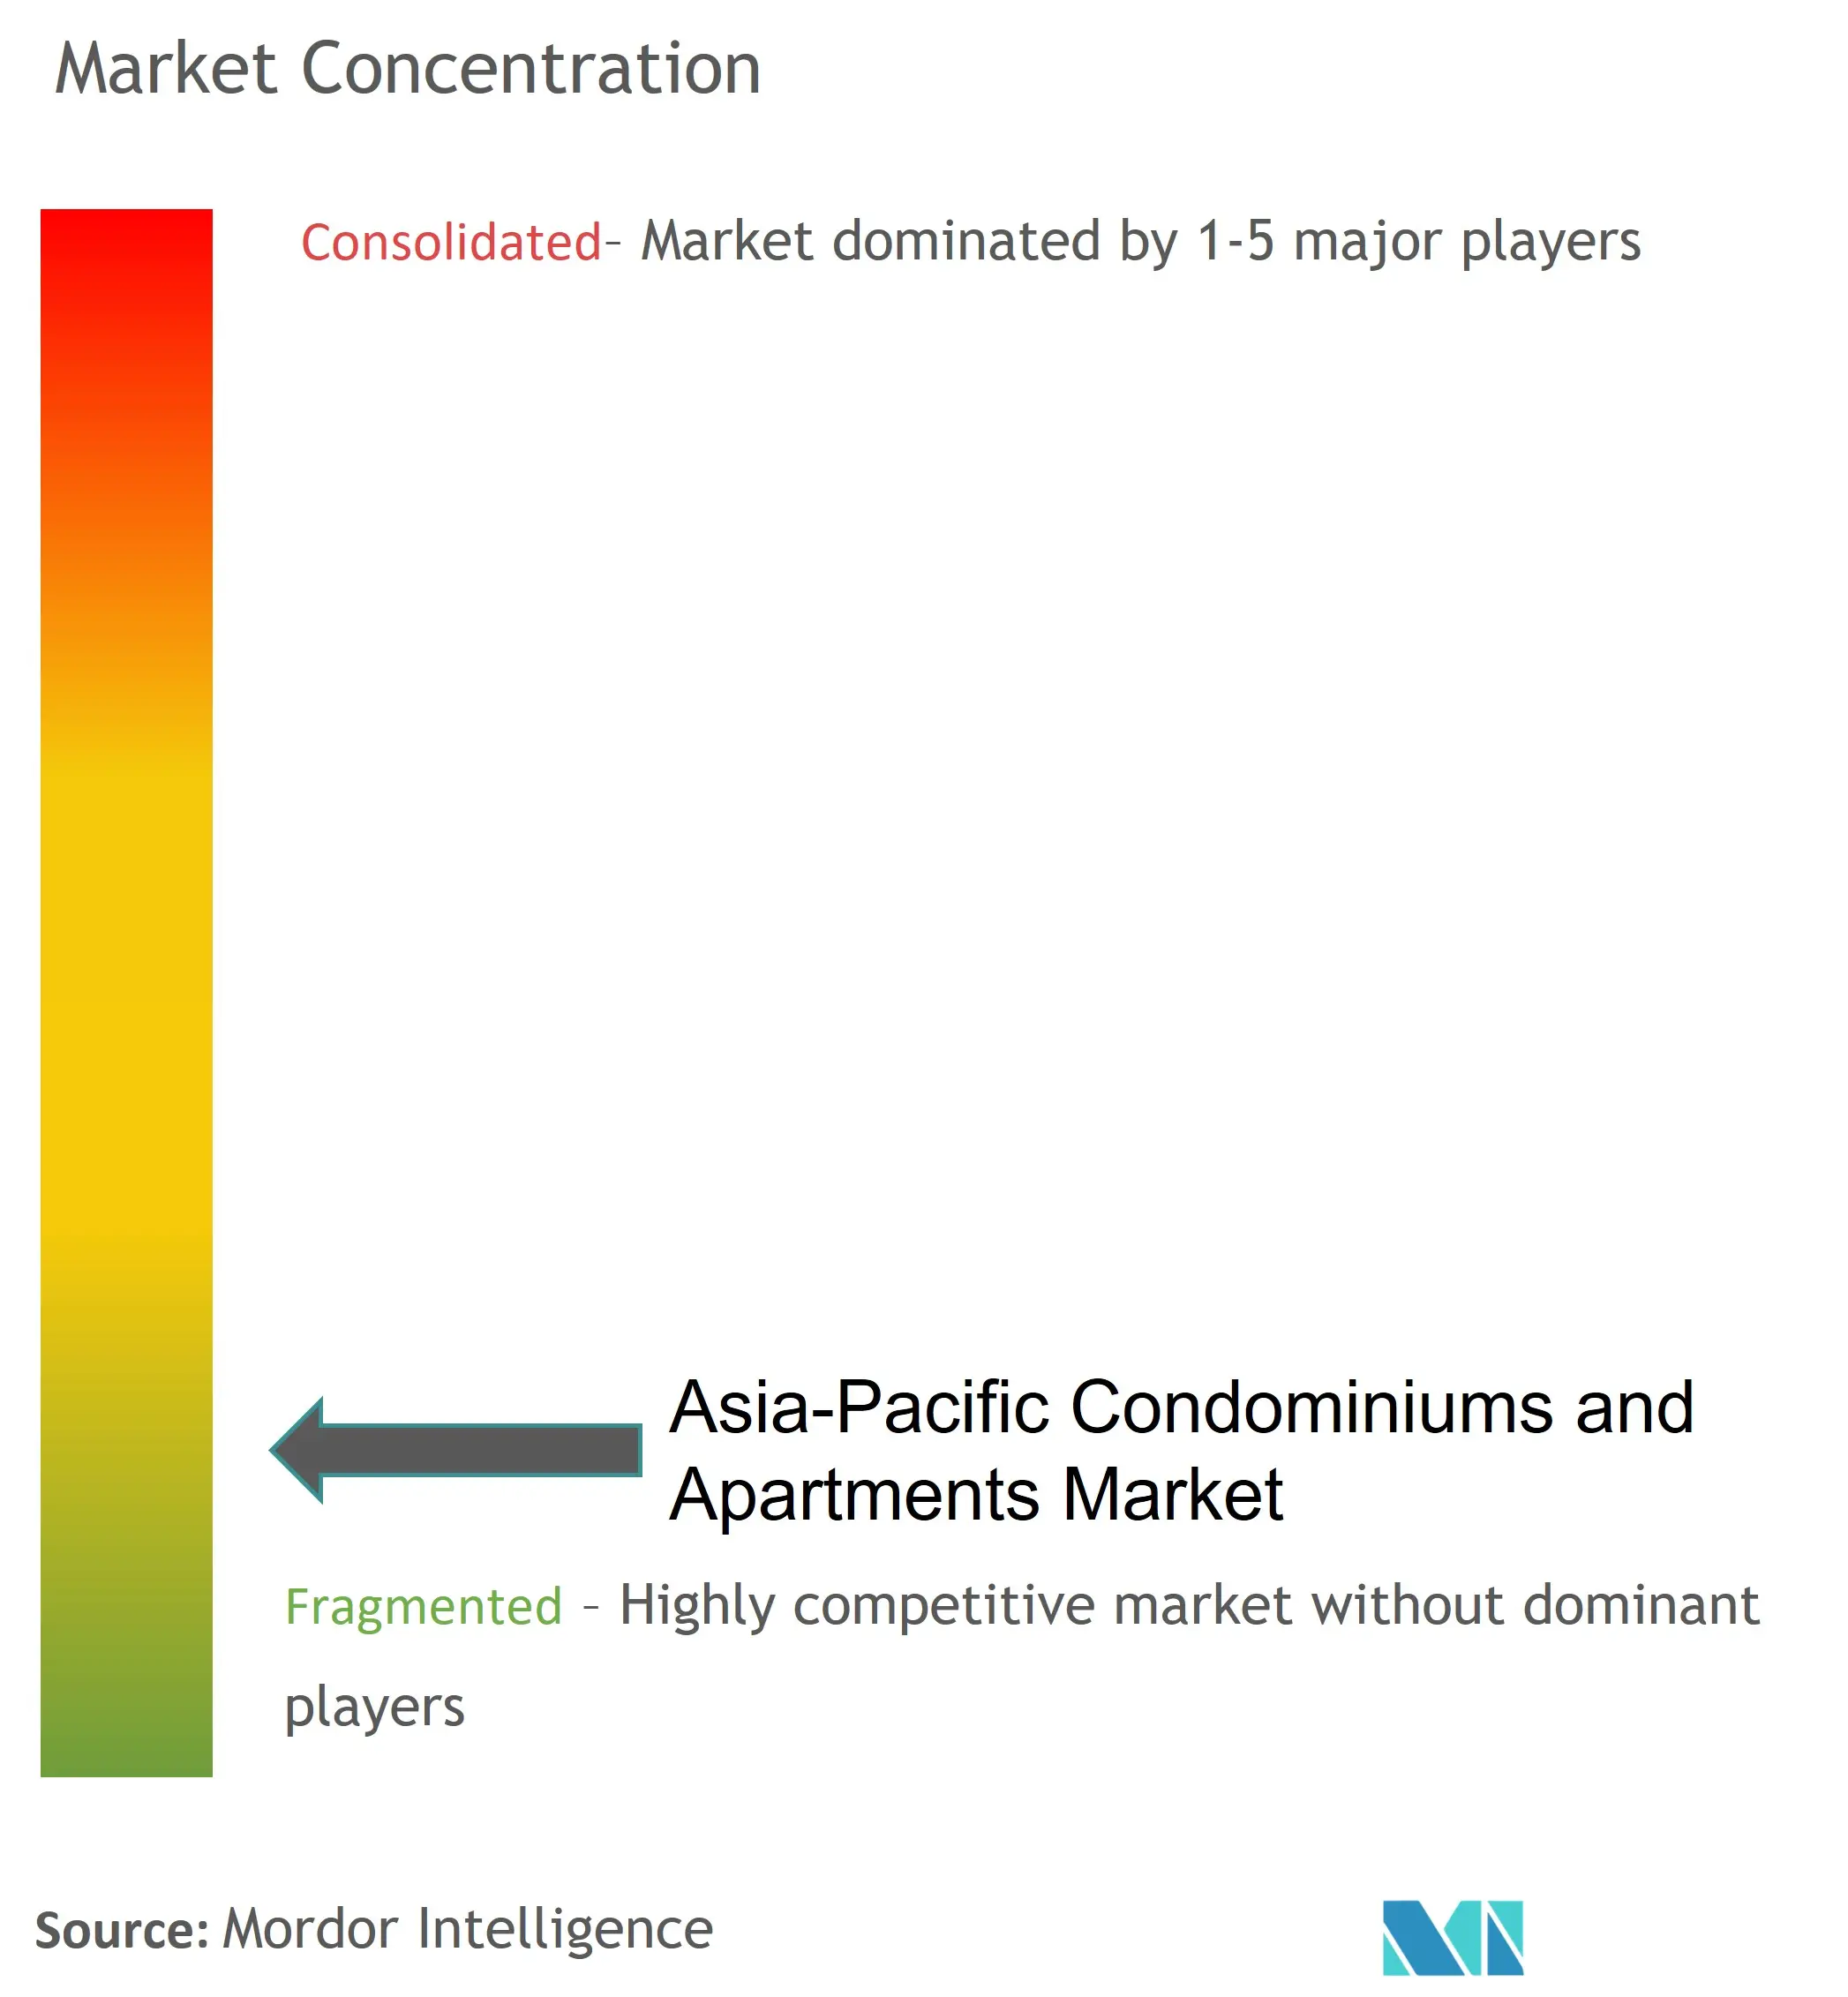 アジア太平洋地域のコンドミニアムとアパートメント市場集中度